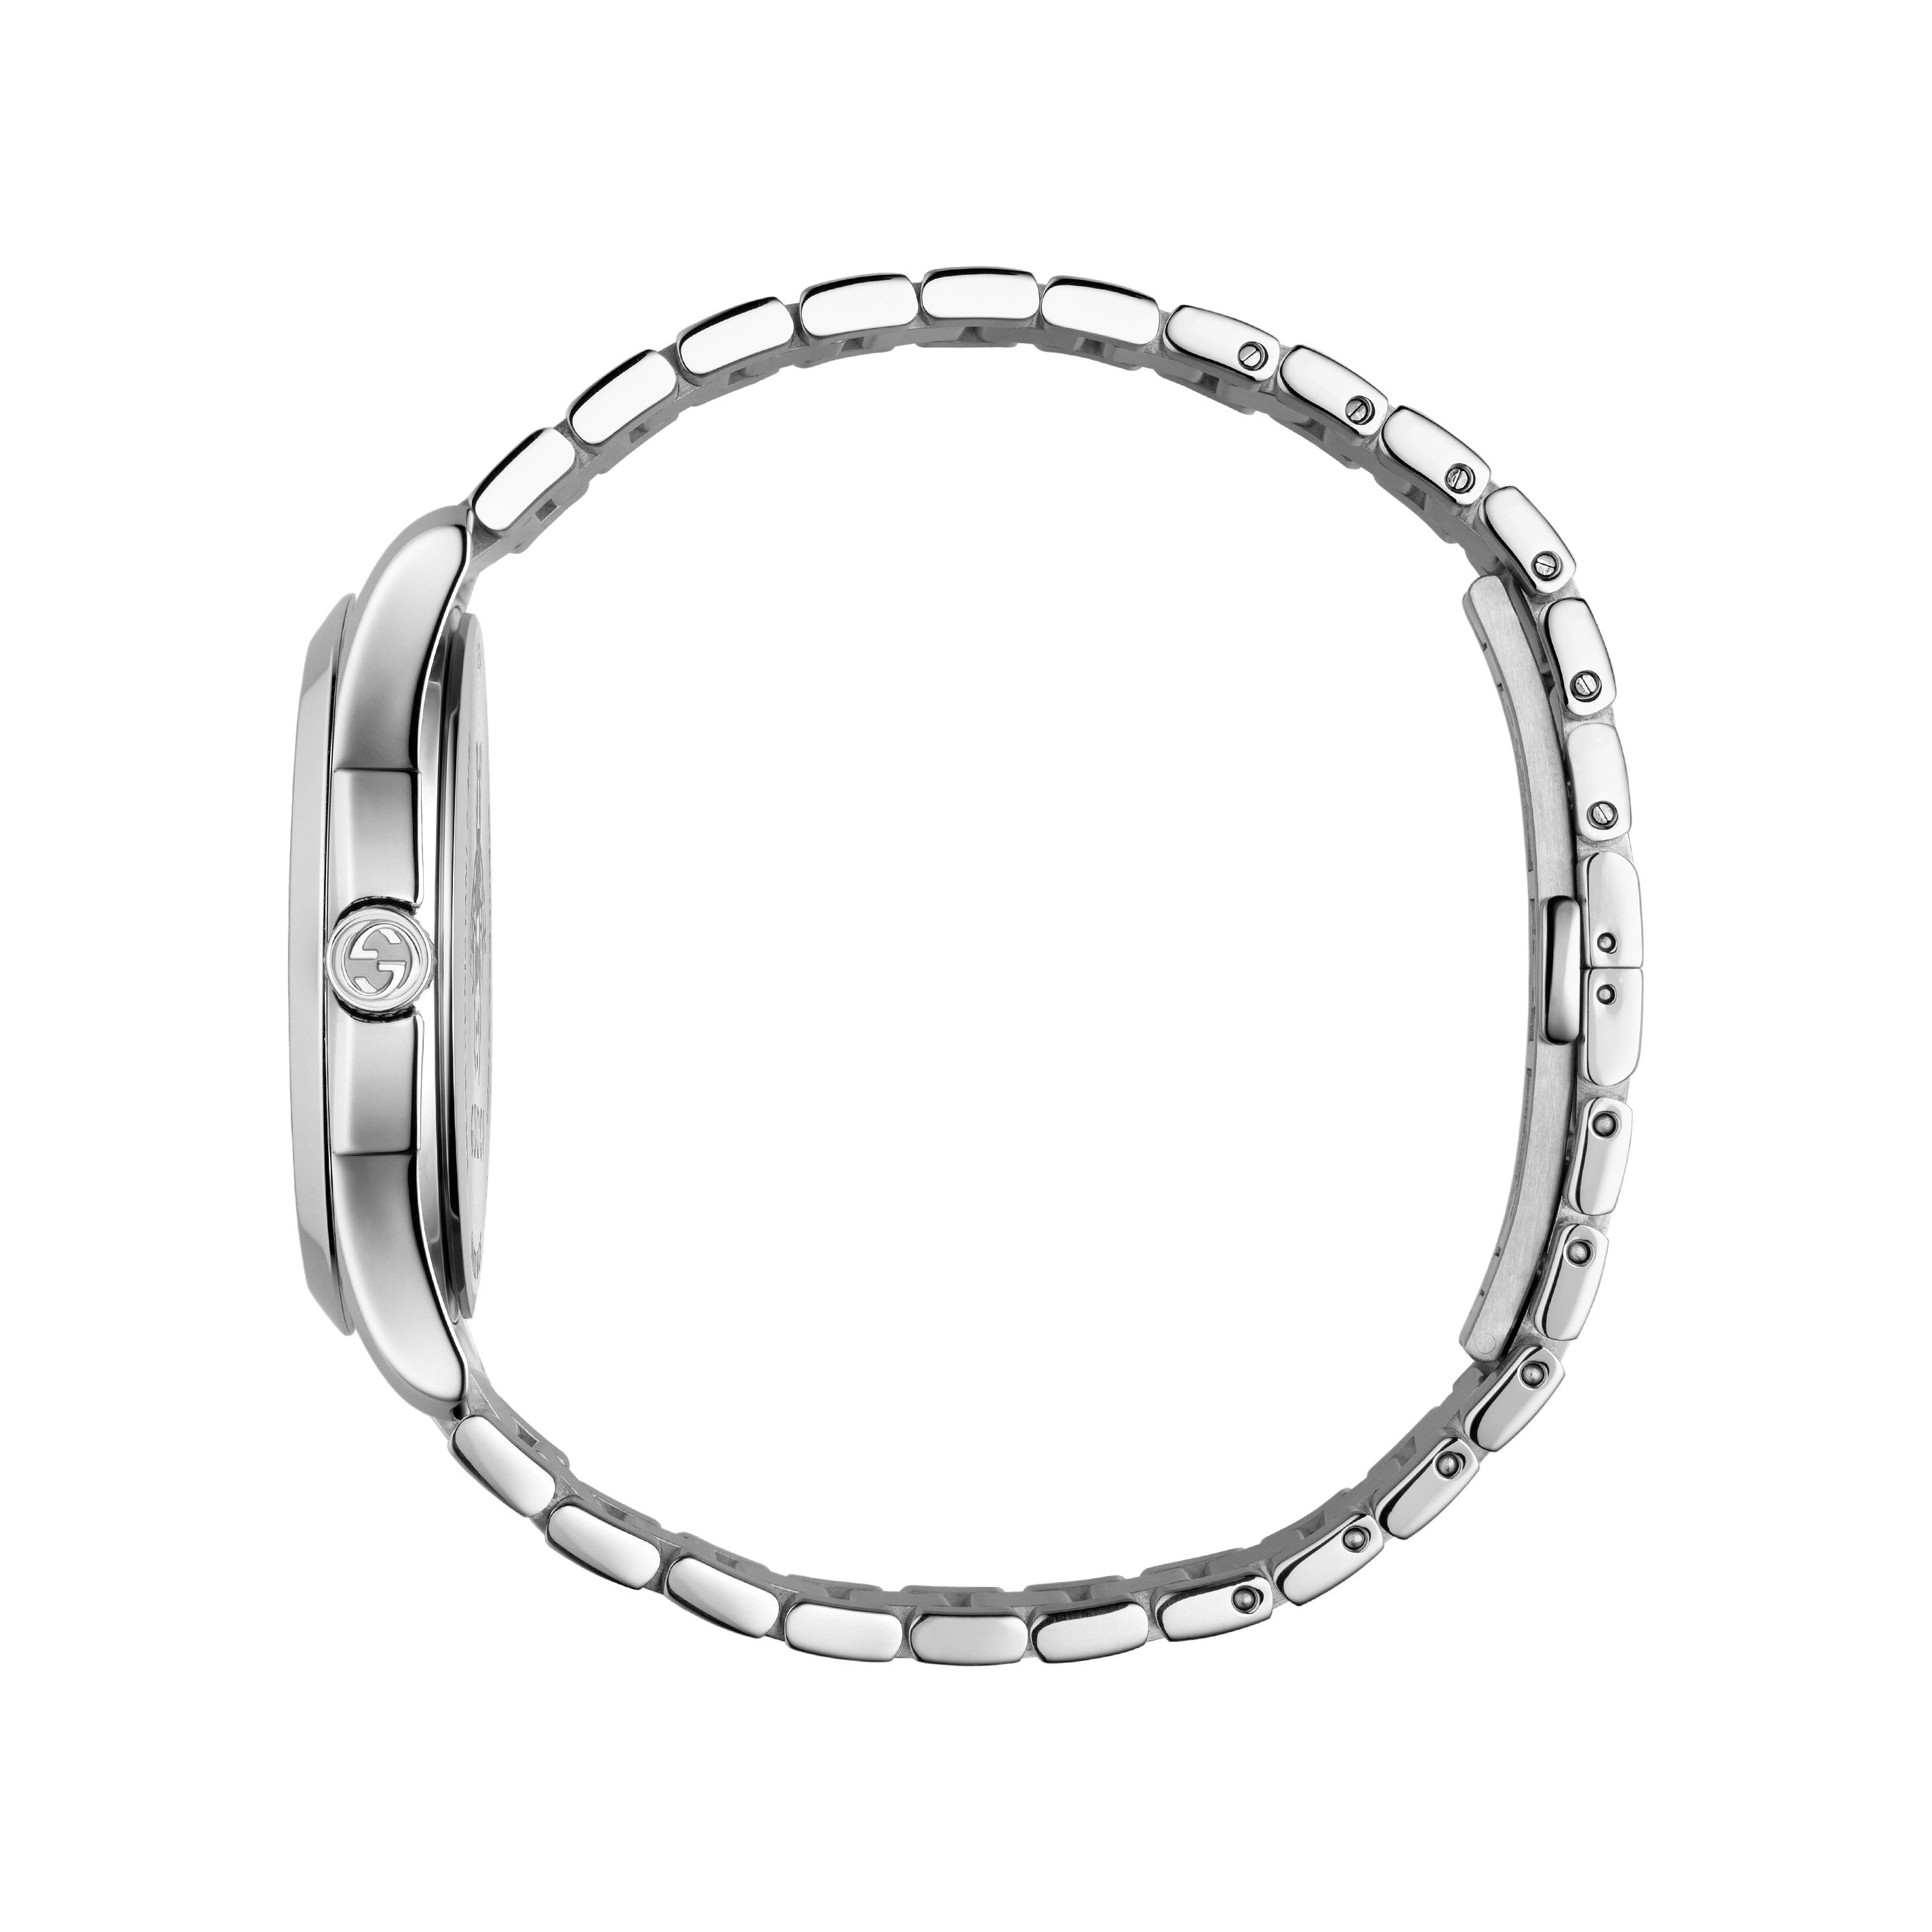 Unisex G-Timeless Watch YA1264024 Gucci